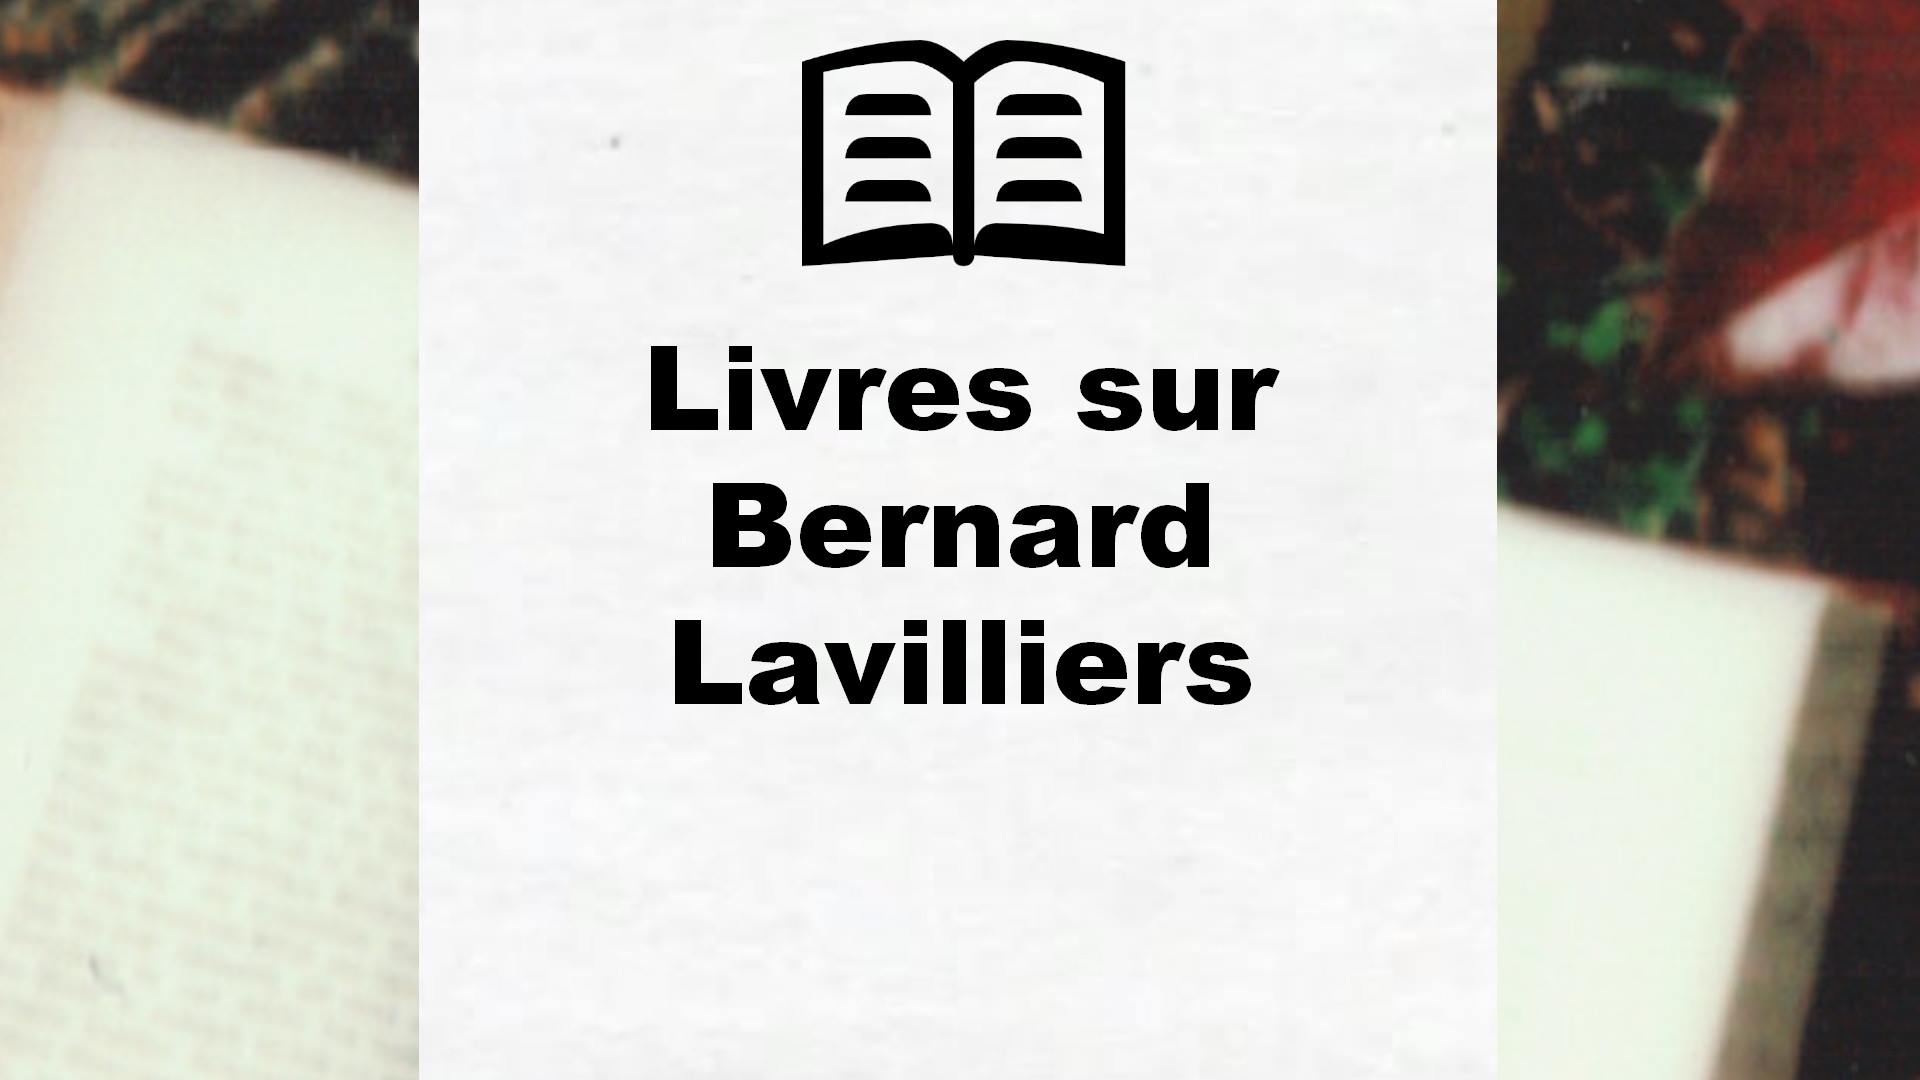 Livres sur Bernard Lavilliers